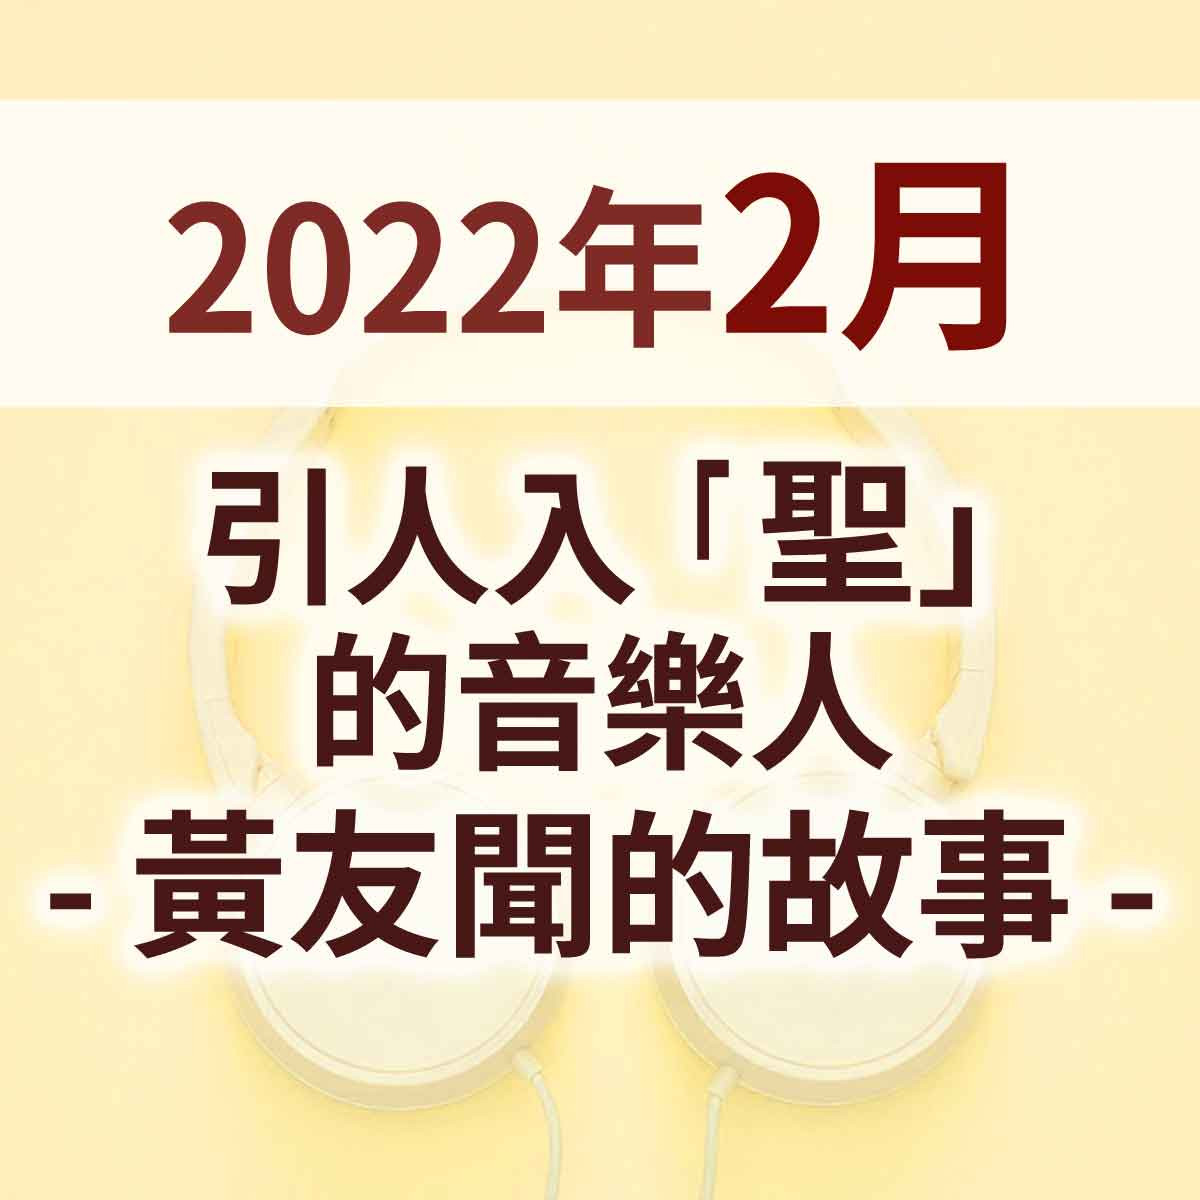 2022年2月 - 引人入「聖」的音樂人 - 黃友聞的故事封面圖